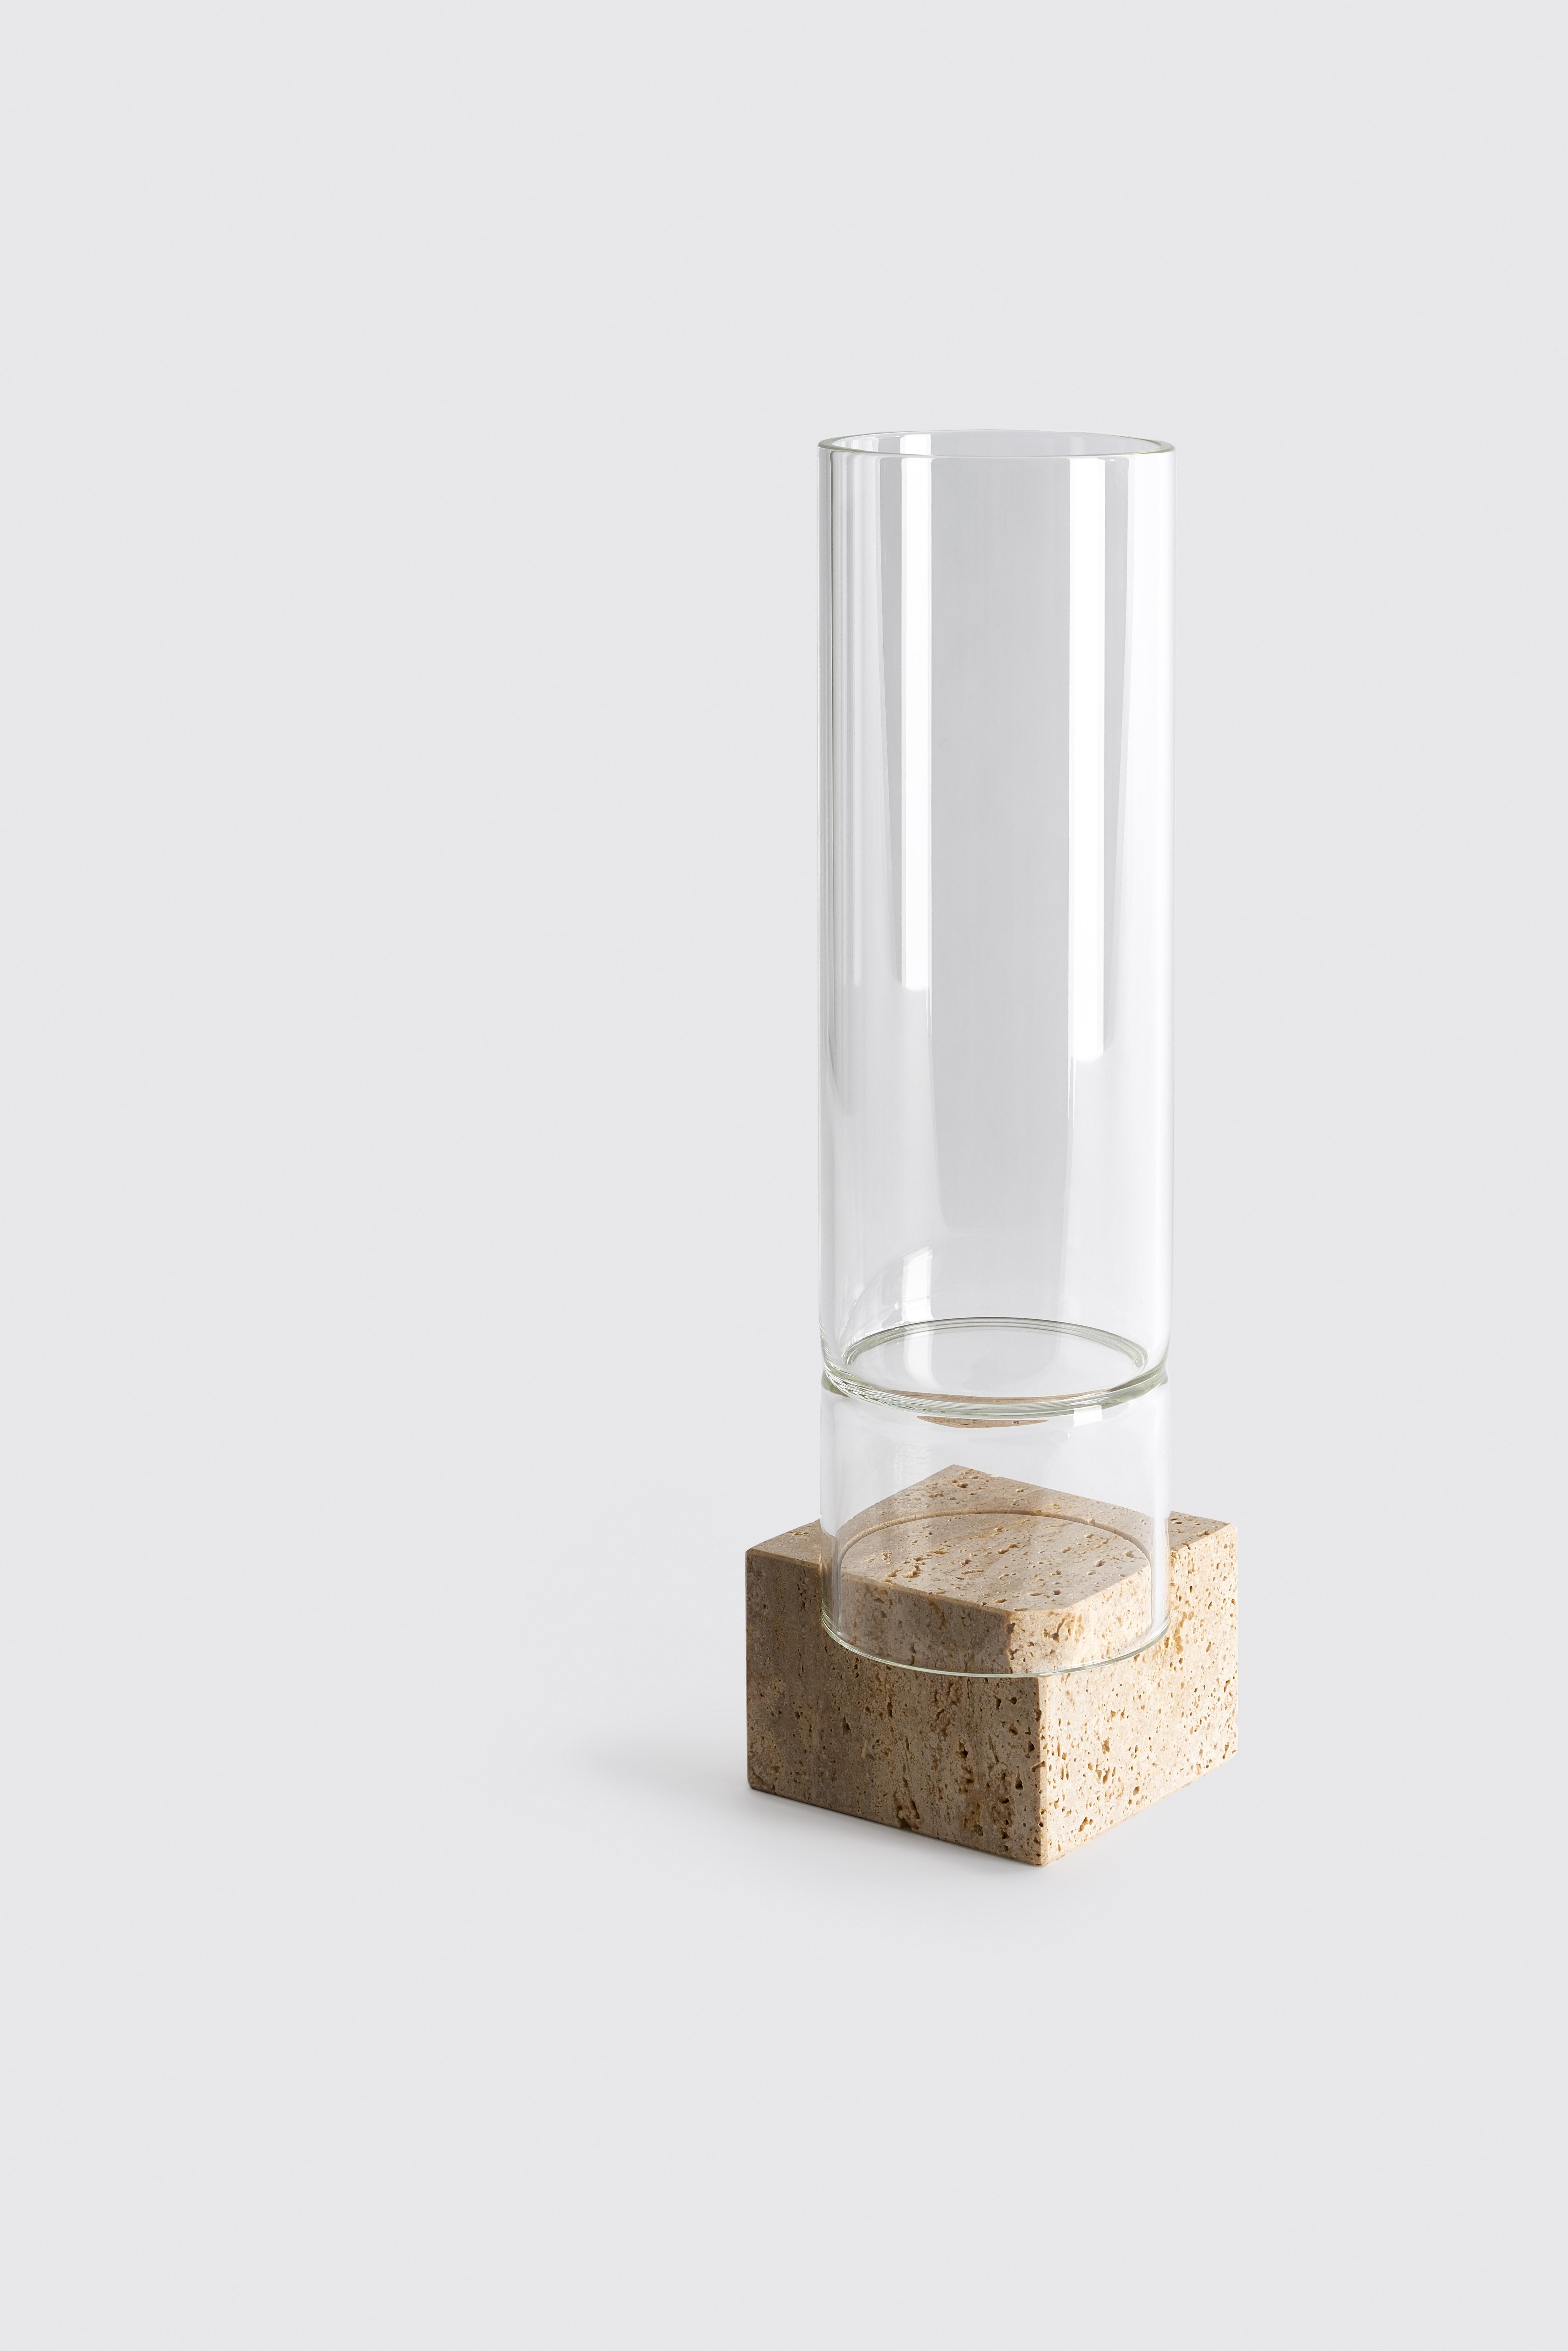 Segno Vase I - Giorgio Bonaguro
Abmessungen: T 12 x B 12 x H 44 cm
MATERIALIEN: Travertin, Glas.

Eine Kollektion, die aus dem Wunsch heraus entstanden ist, Abfälle aus der Marmorverarbeitung wiederzuverwerten: kleine Teile von Platten